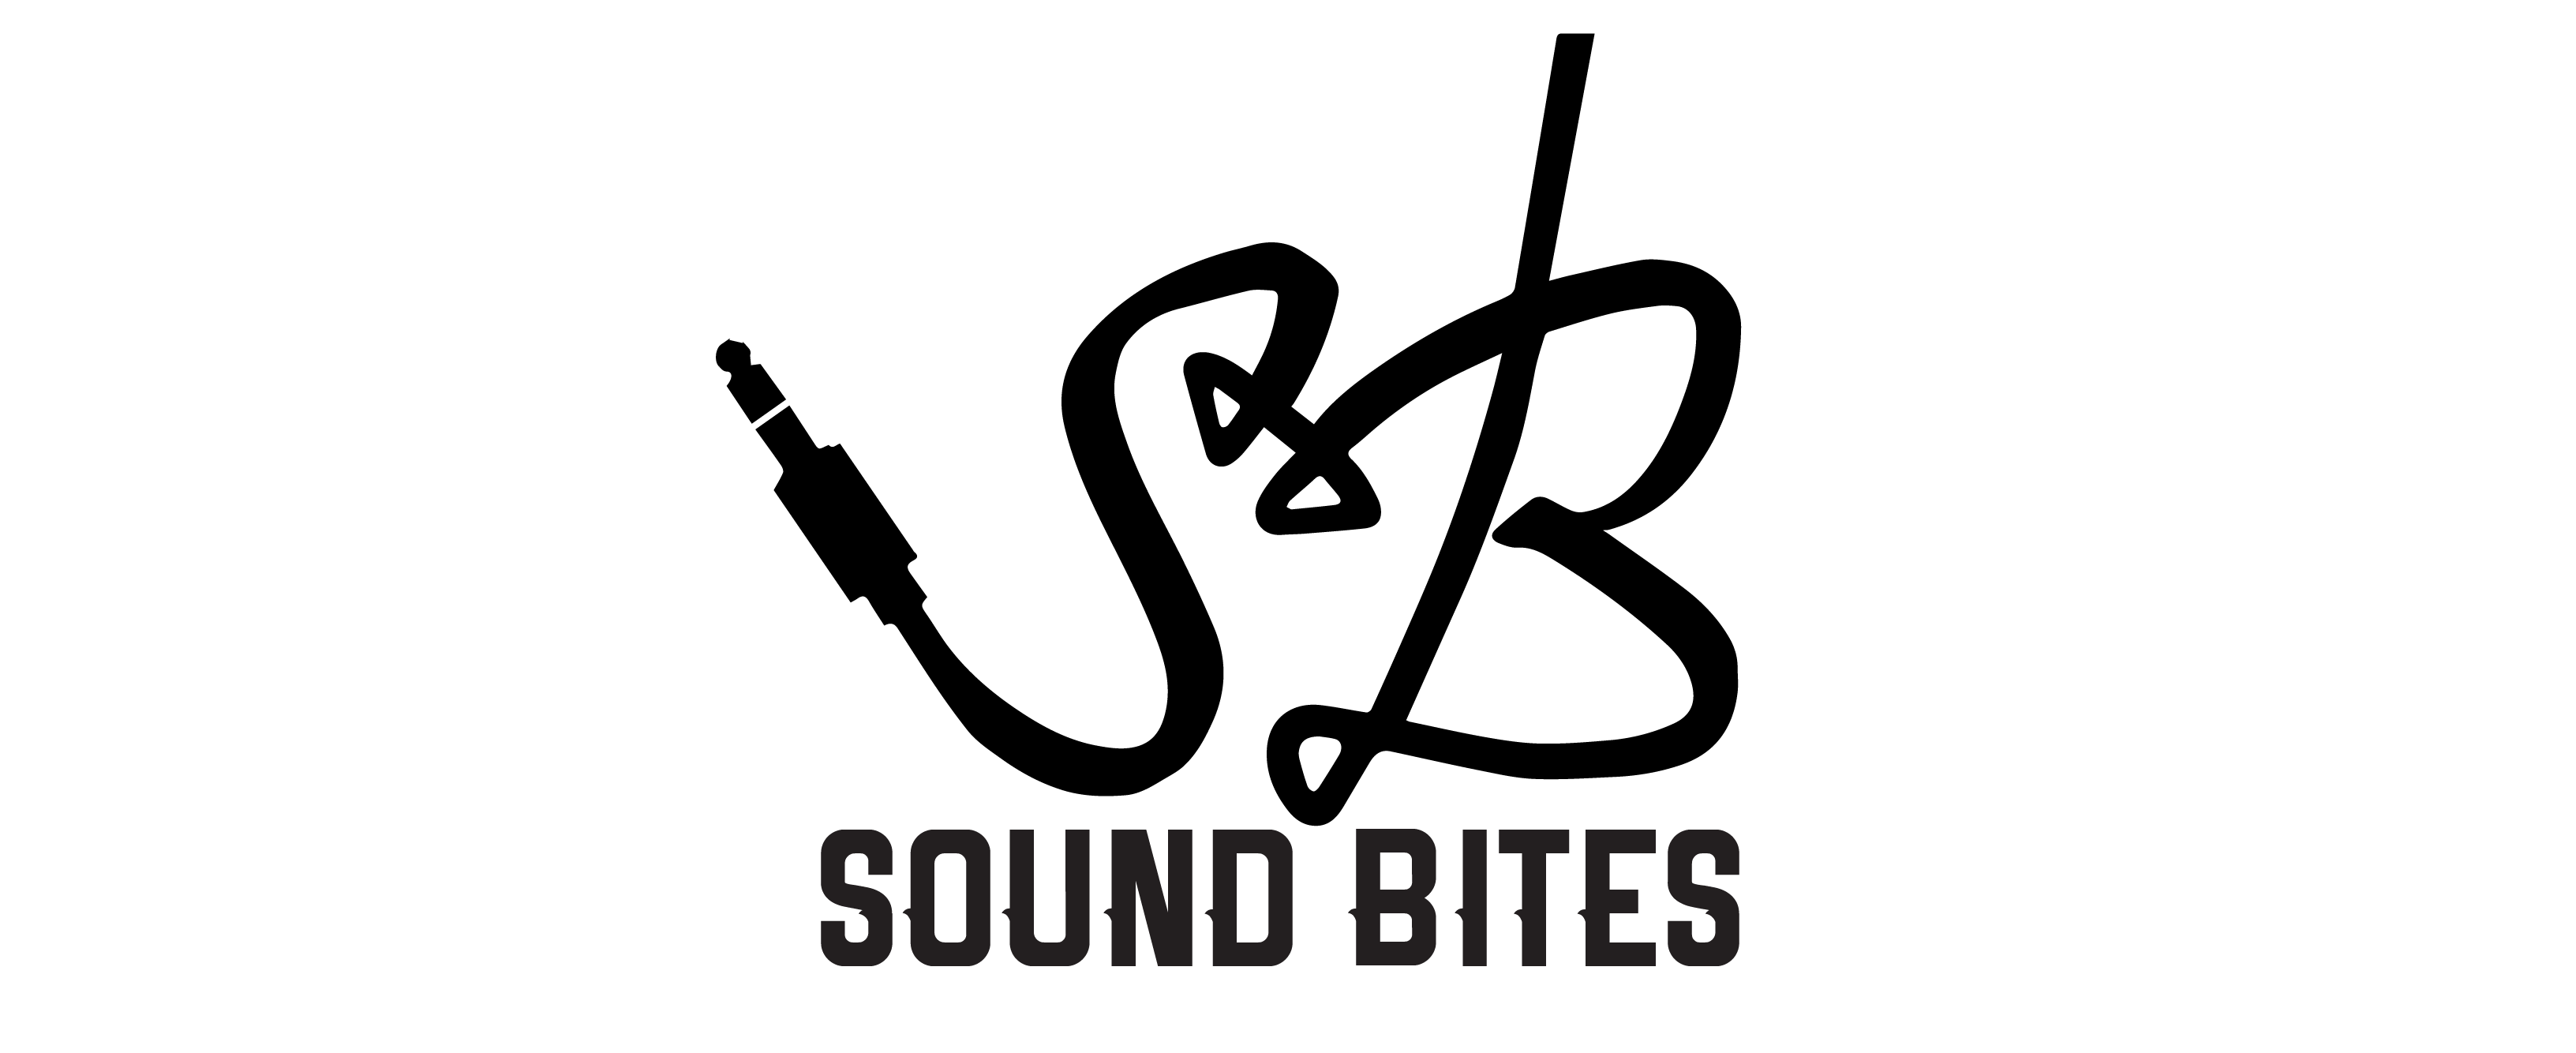 Sound Bites logo